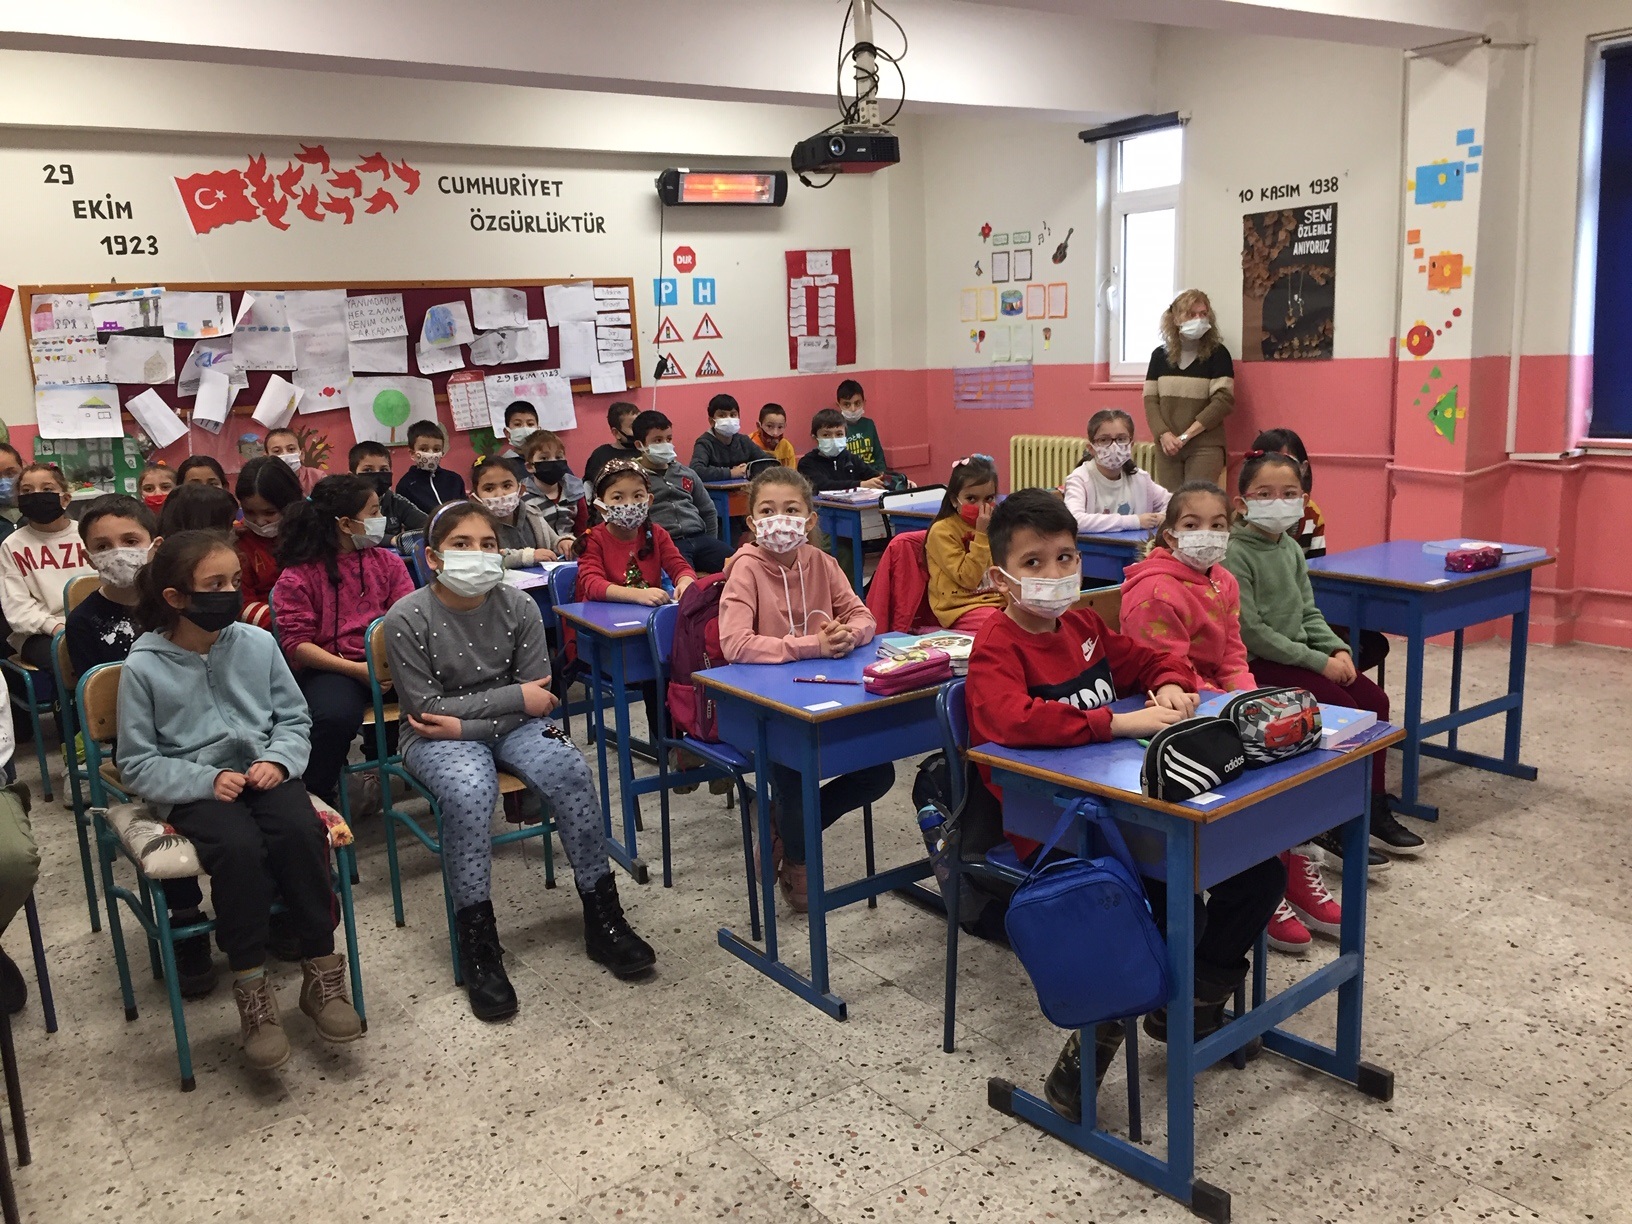 Gözpınar İlkokulu'nda Sıfır Atık Konulu Eğitim Verildi